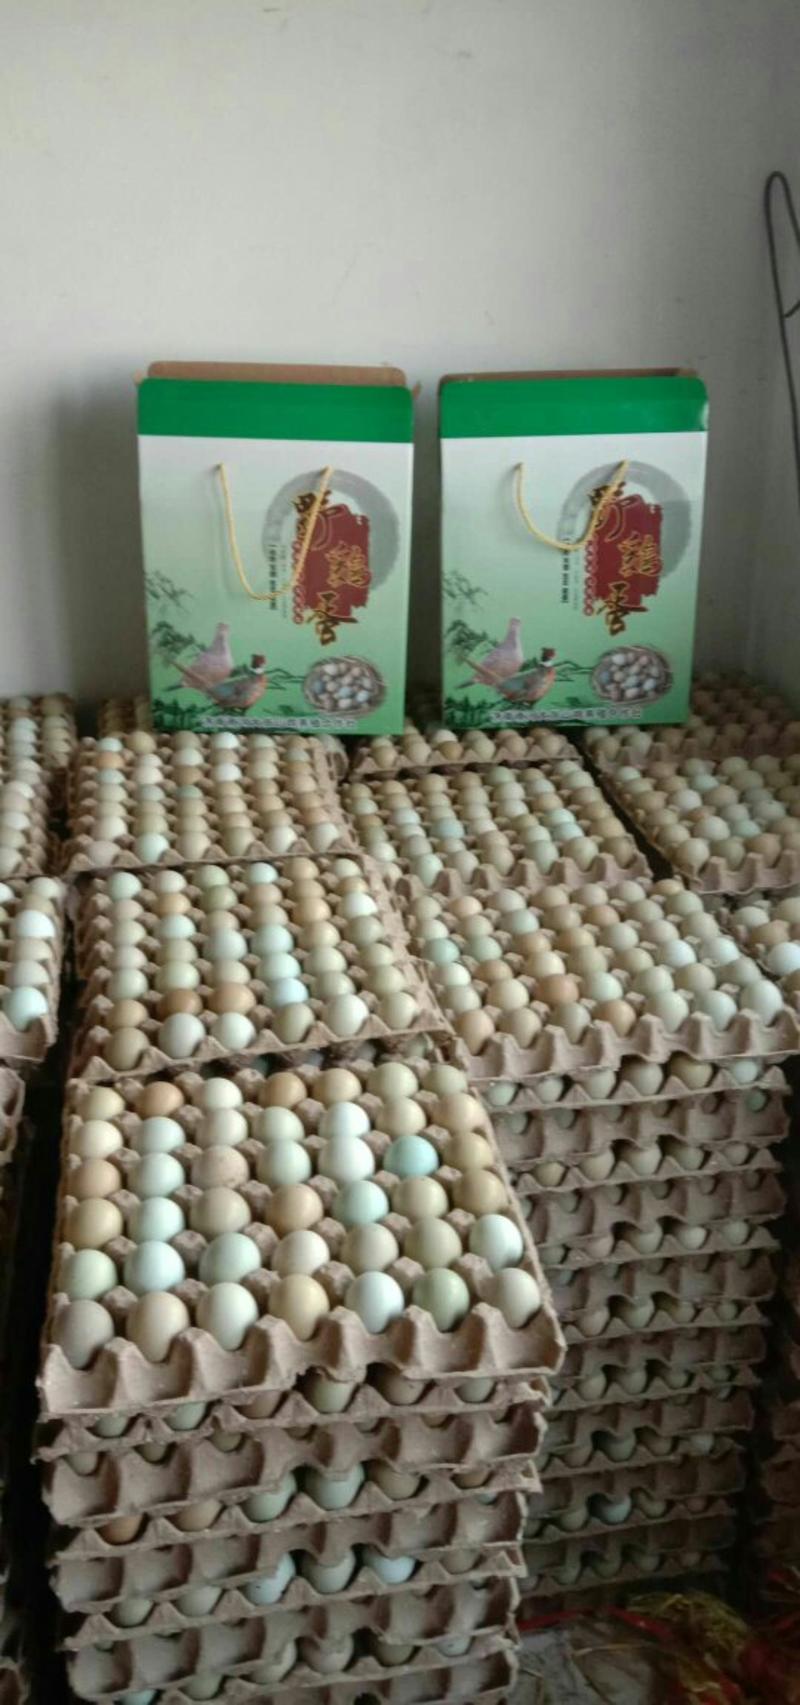 七彩山鸡蛋营养丰富建康美味保证质量破损保陪需要的老板